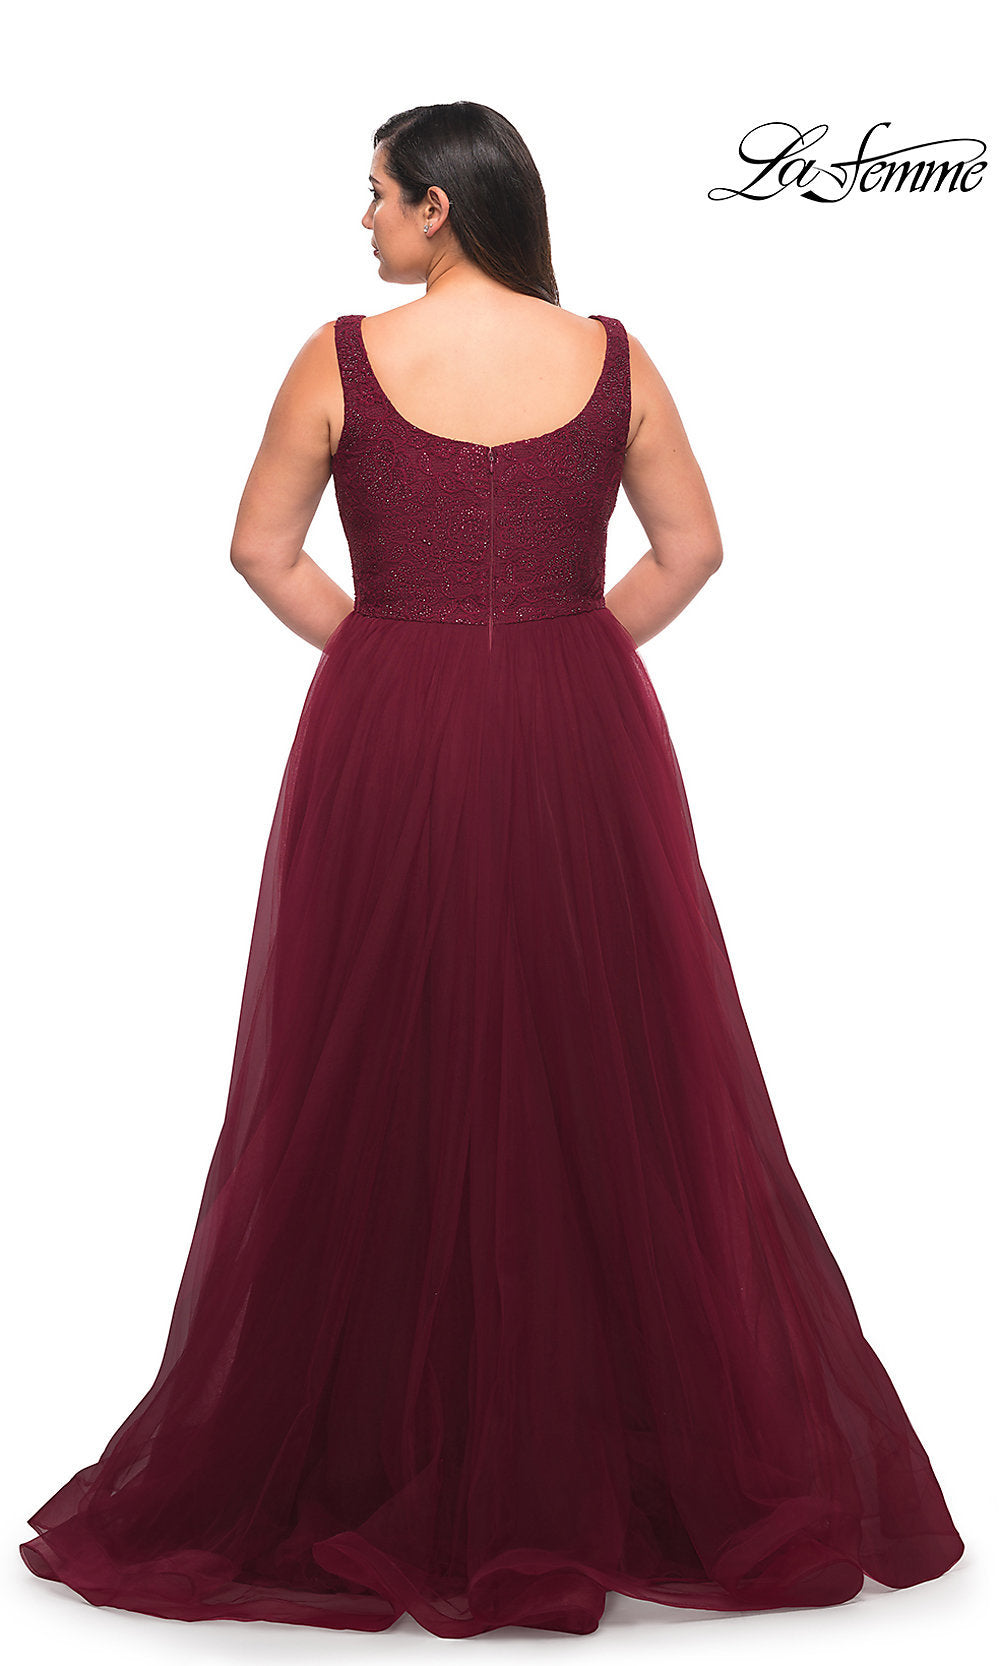  La Femme Long Lace-Bodice Plus-Size Prom Dress